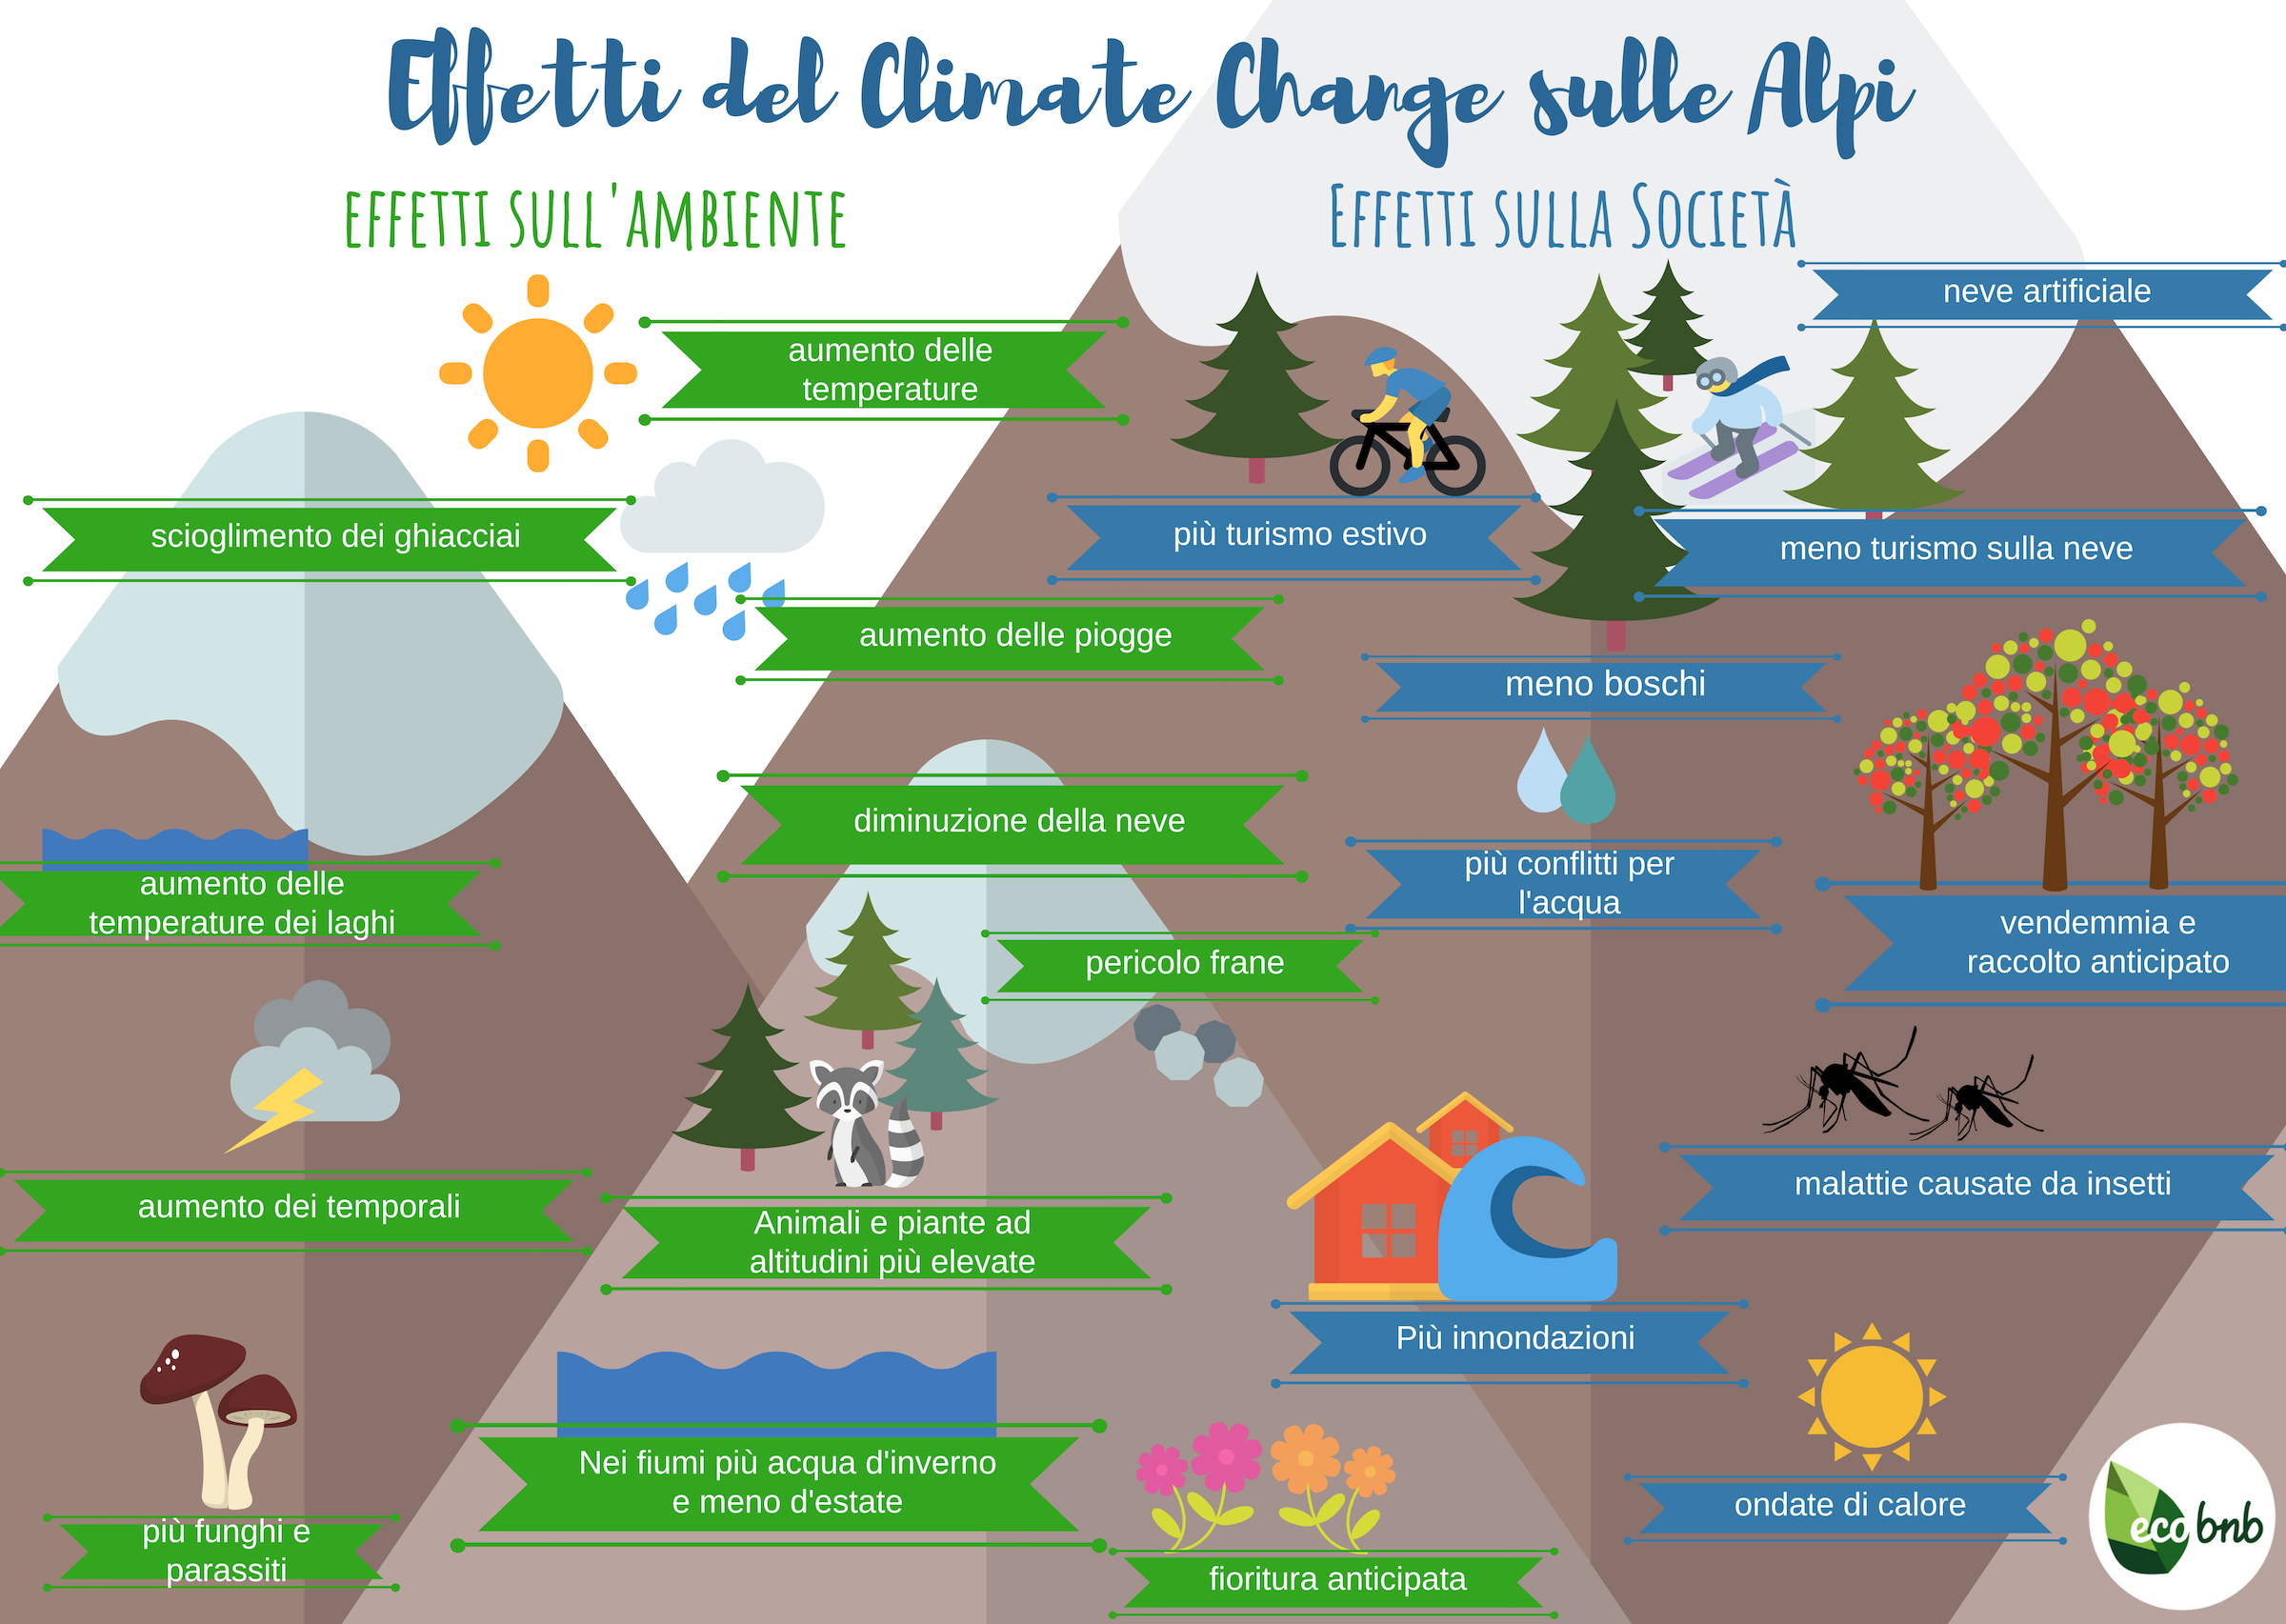 Come i cambiamenti climatici influenzeranno l'economia e l'ambiente Alpino